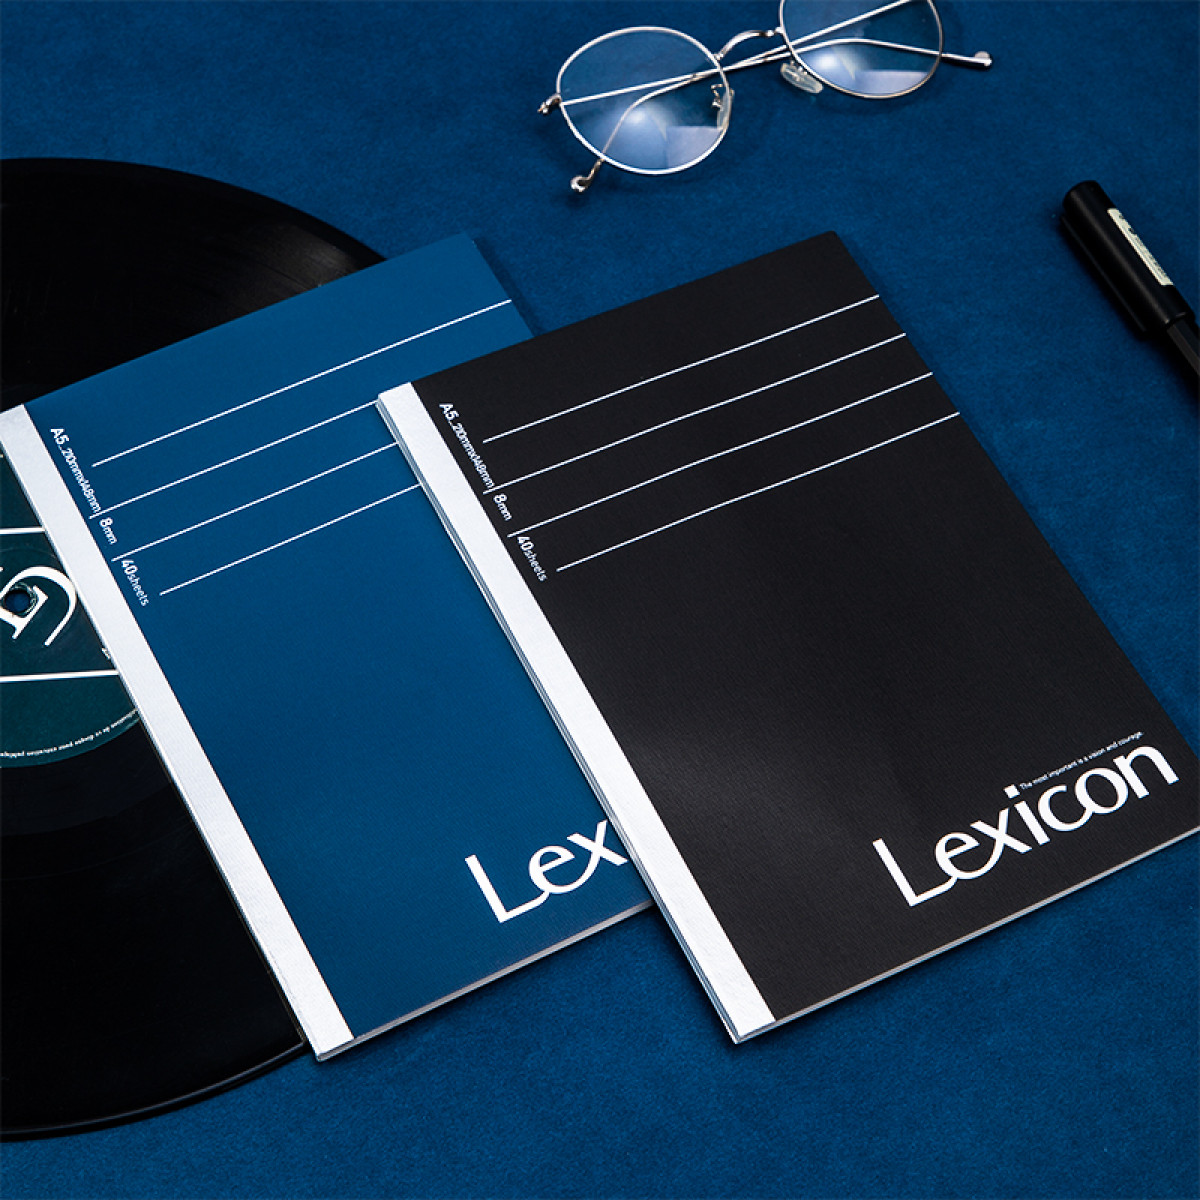 得力6本A5/40张Lexicon系列高档软抄本记事本 无线装订工作笔记本子文具办公用品 2155